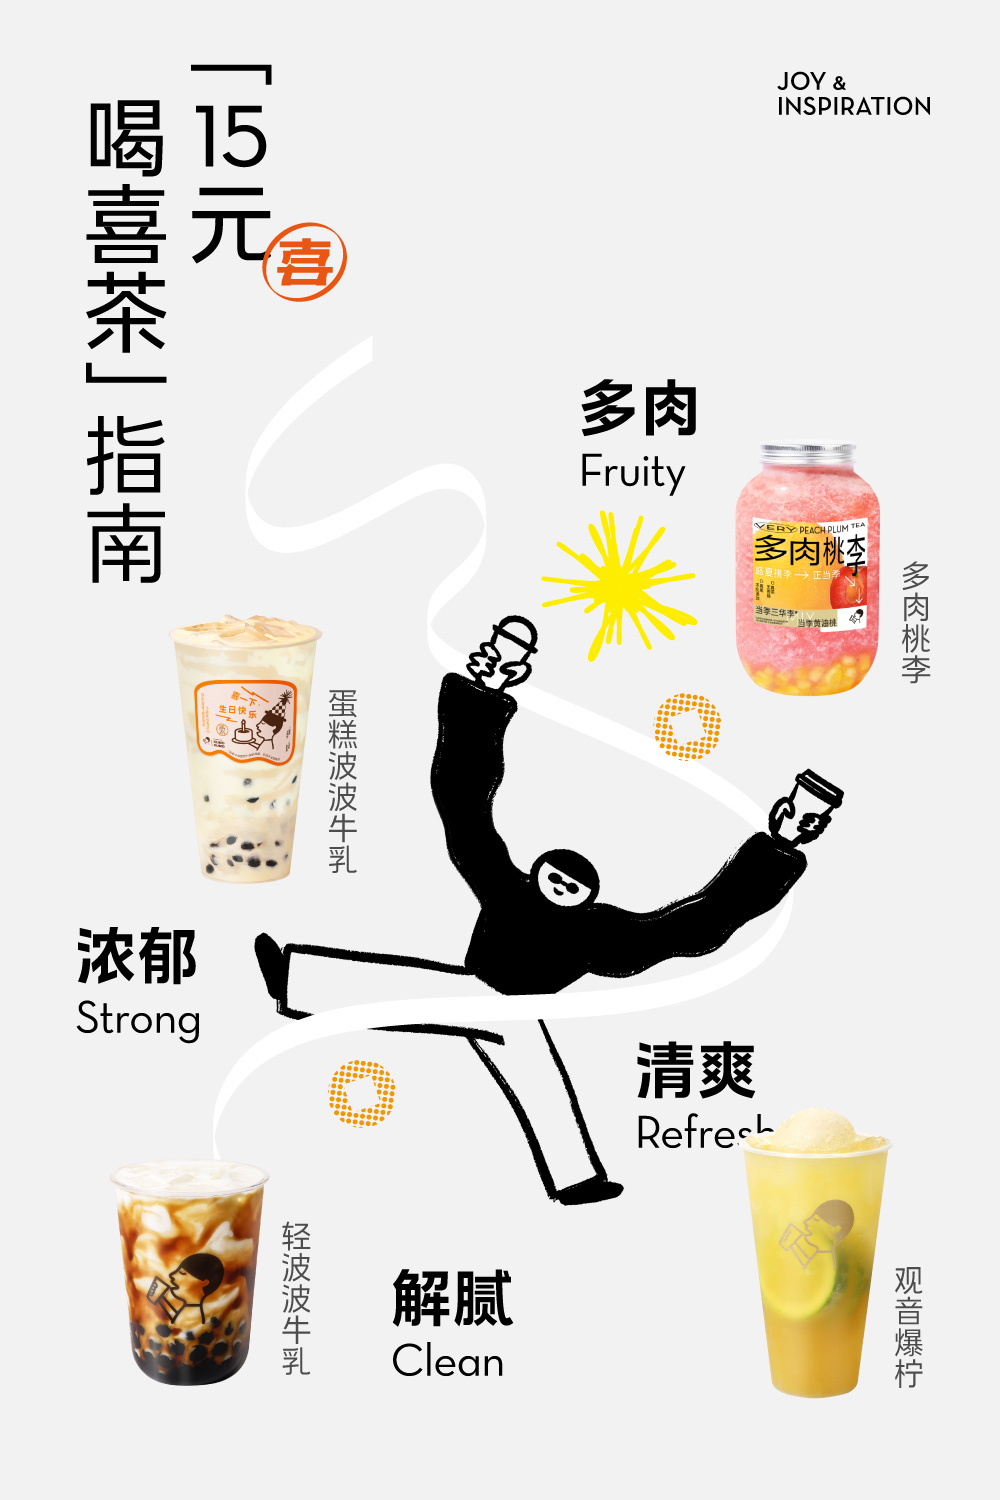 极简插画风！12张喜茶饮品海报设计